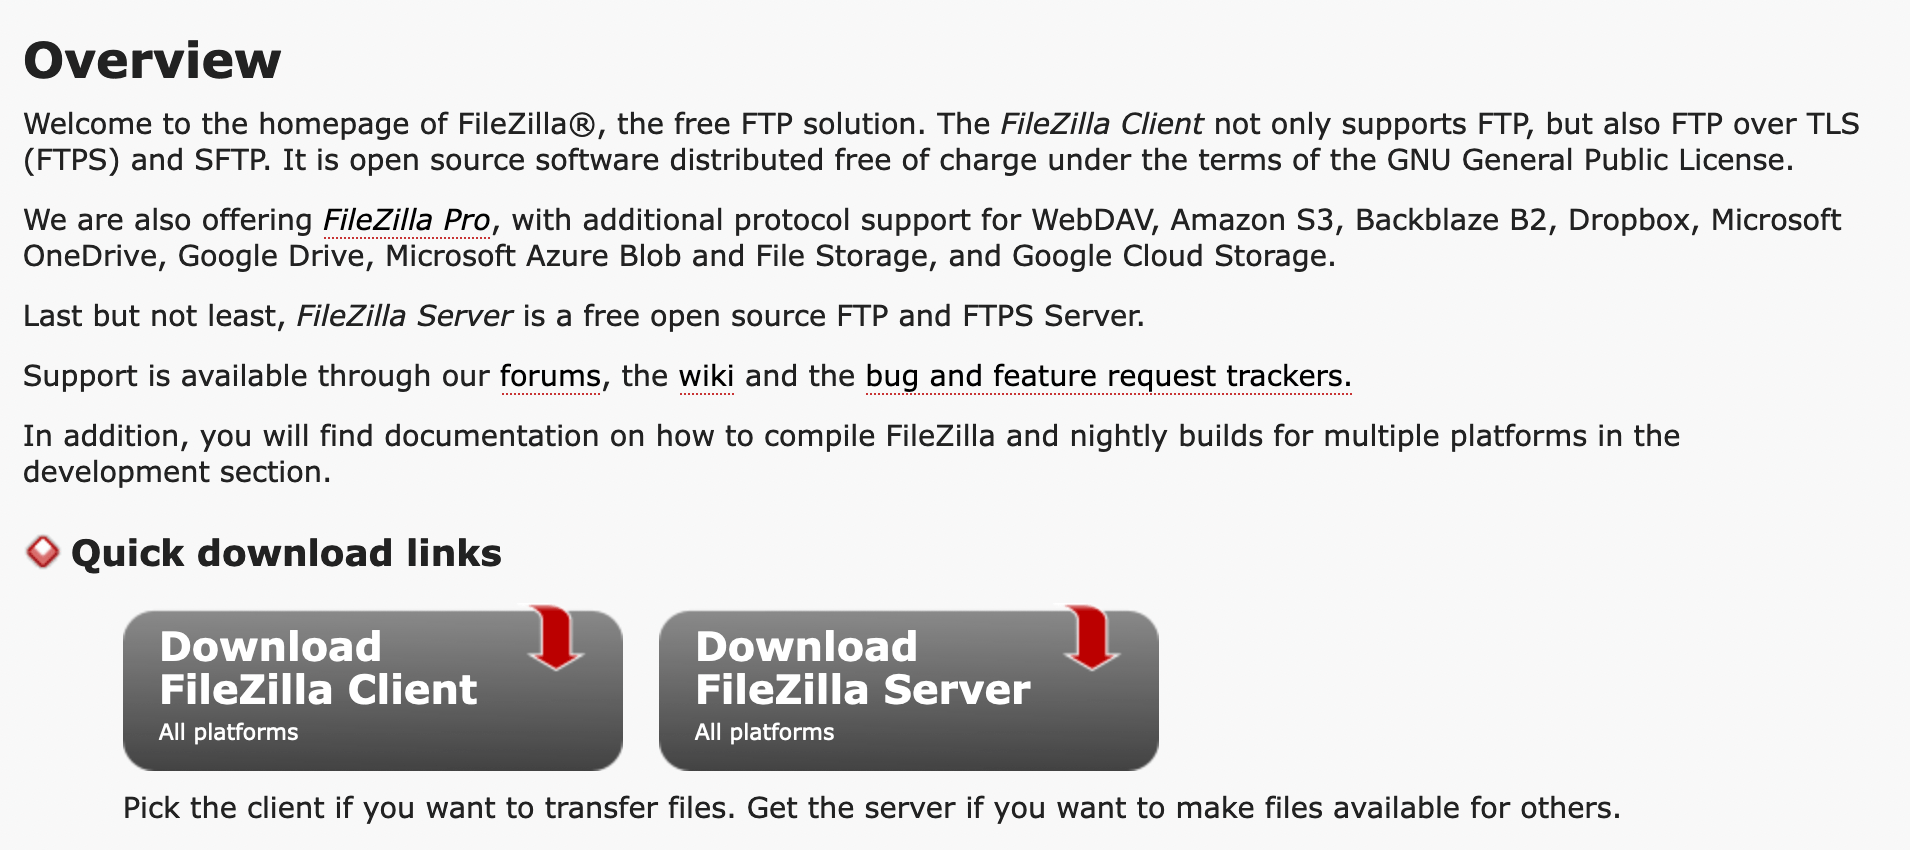 Кнопка "Download FileZilla Client" на головній сторінці сайту FileZilla